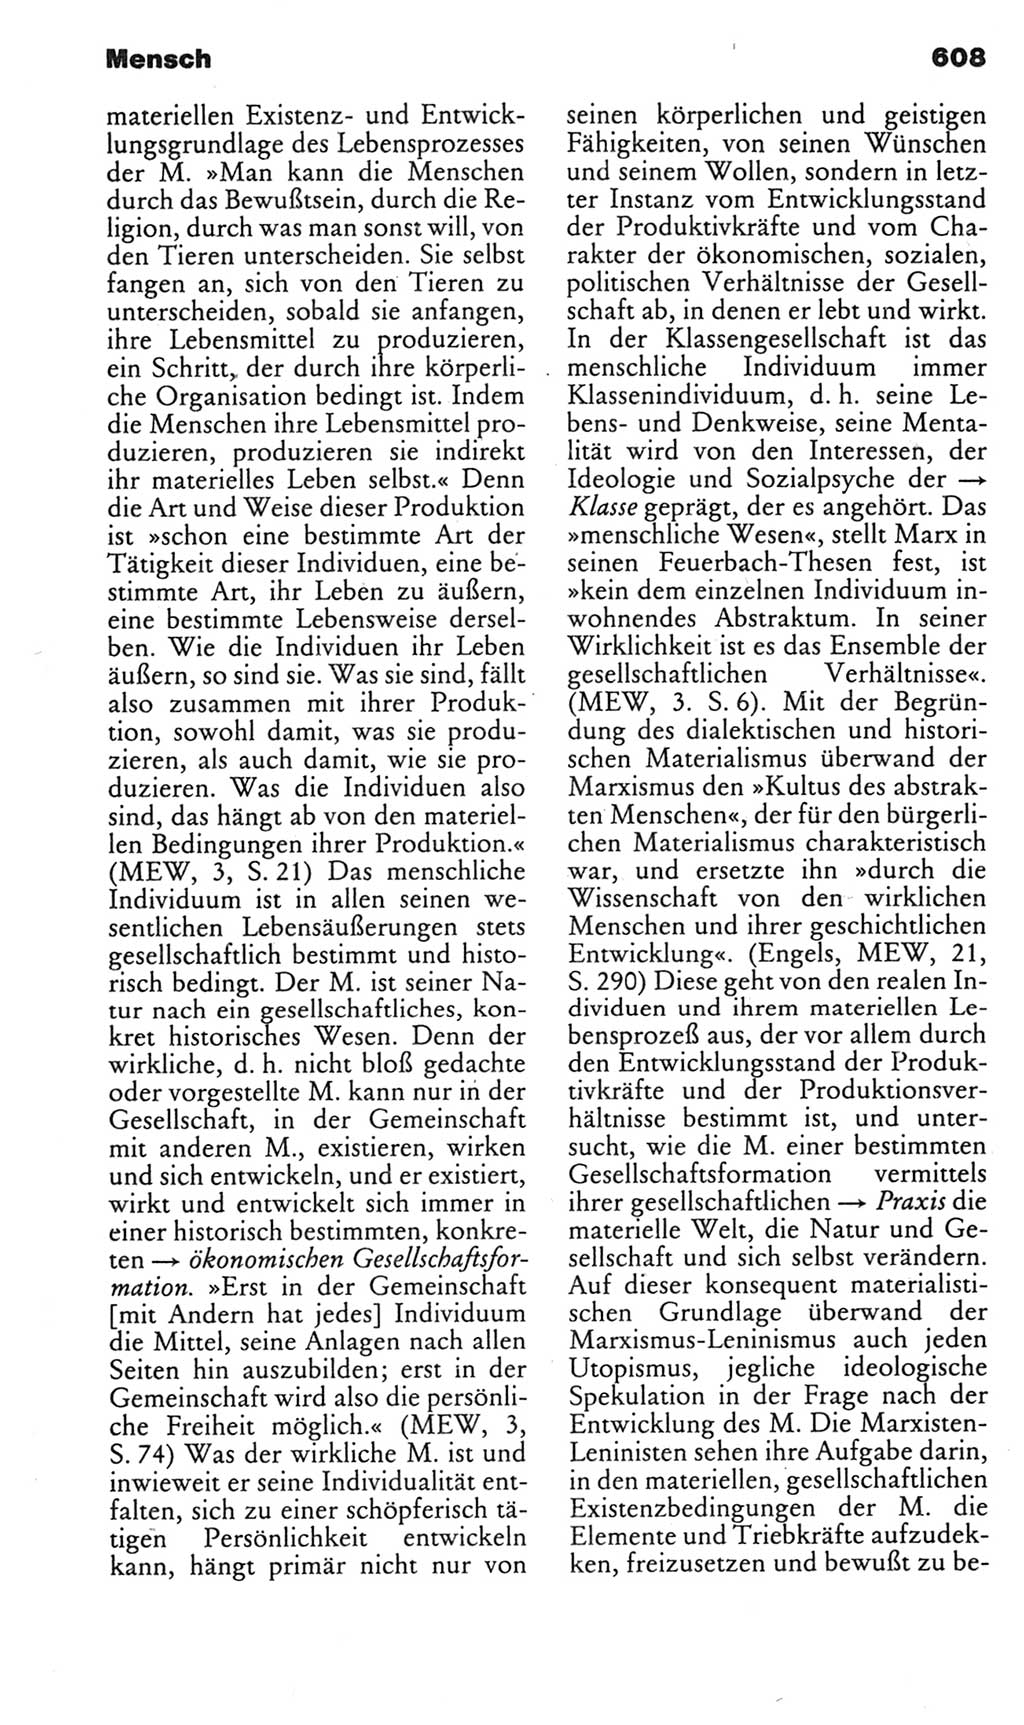 Kleines politisches Wörterbuch [Deutsche Demokratische Republik (DDR)] 1985, Seite 608 (Kl. pol. Wb. DDR 1985, S. 608)